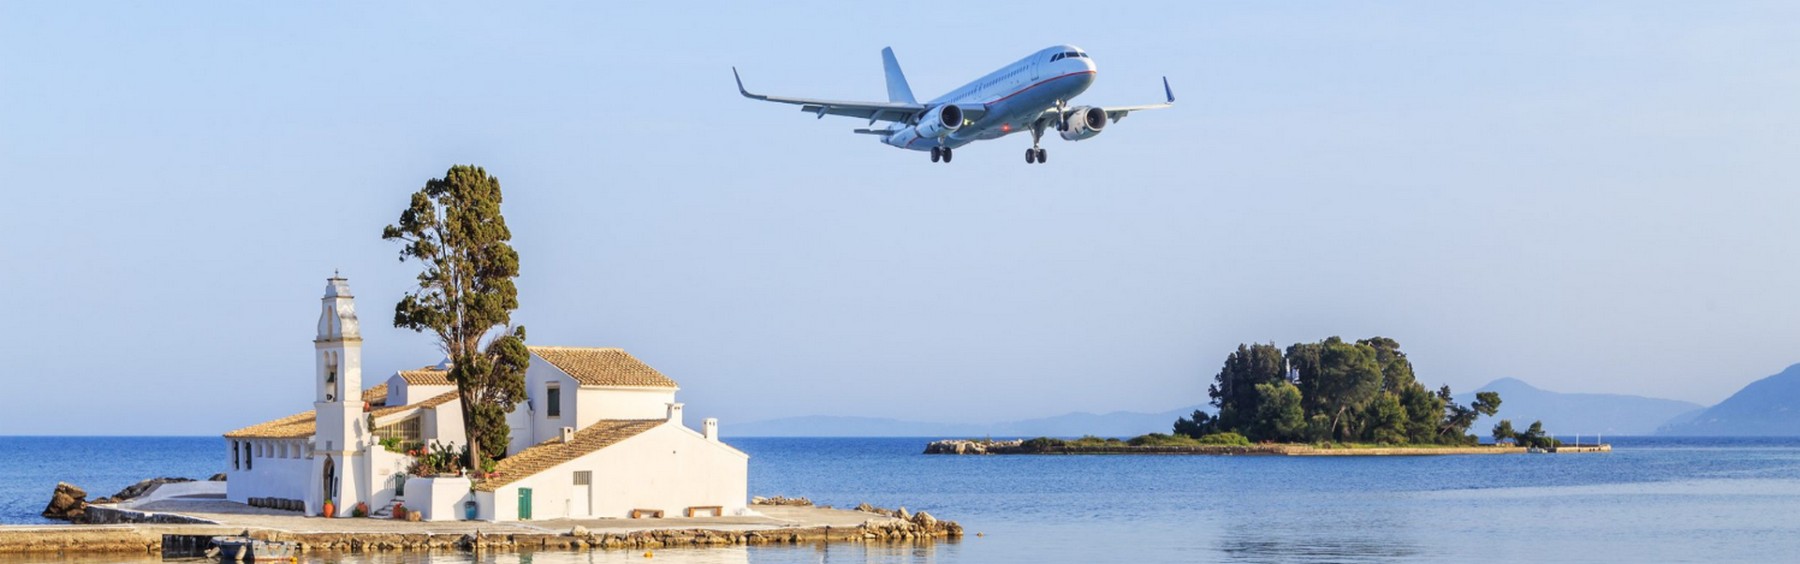 Corfu-landing